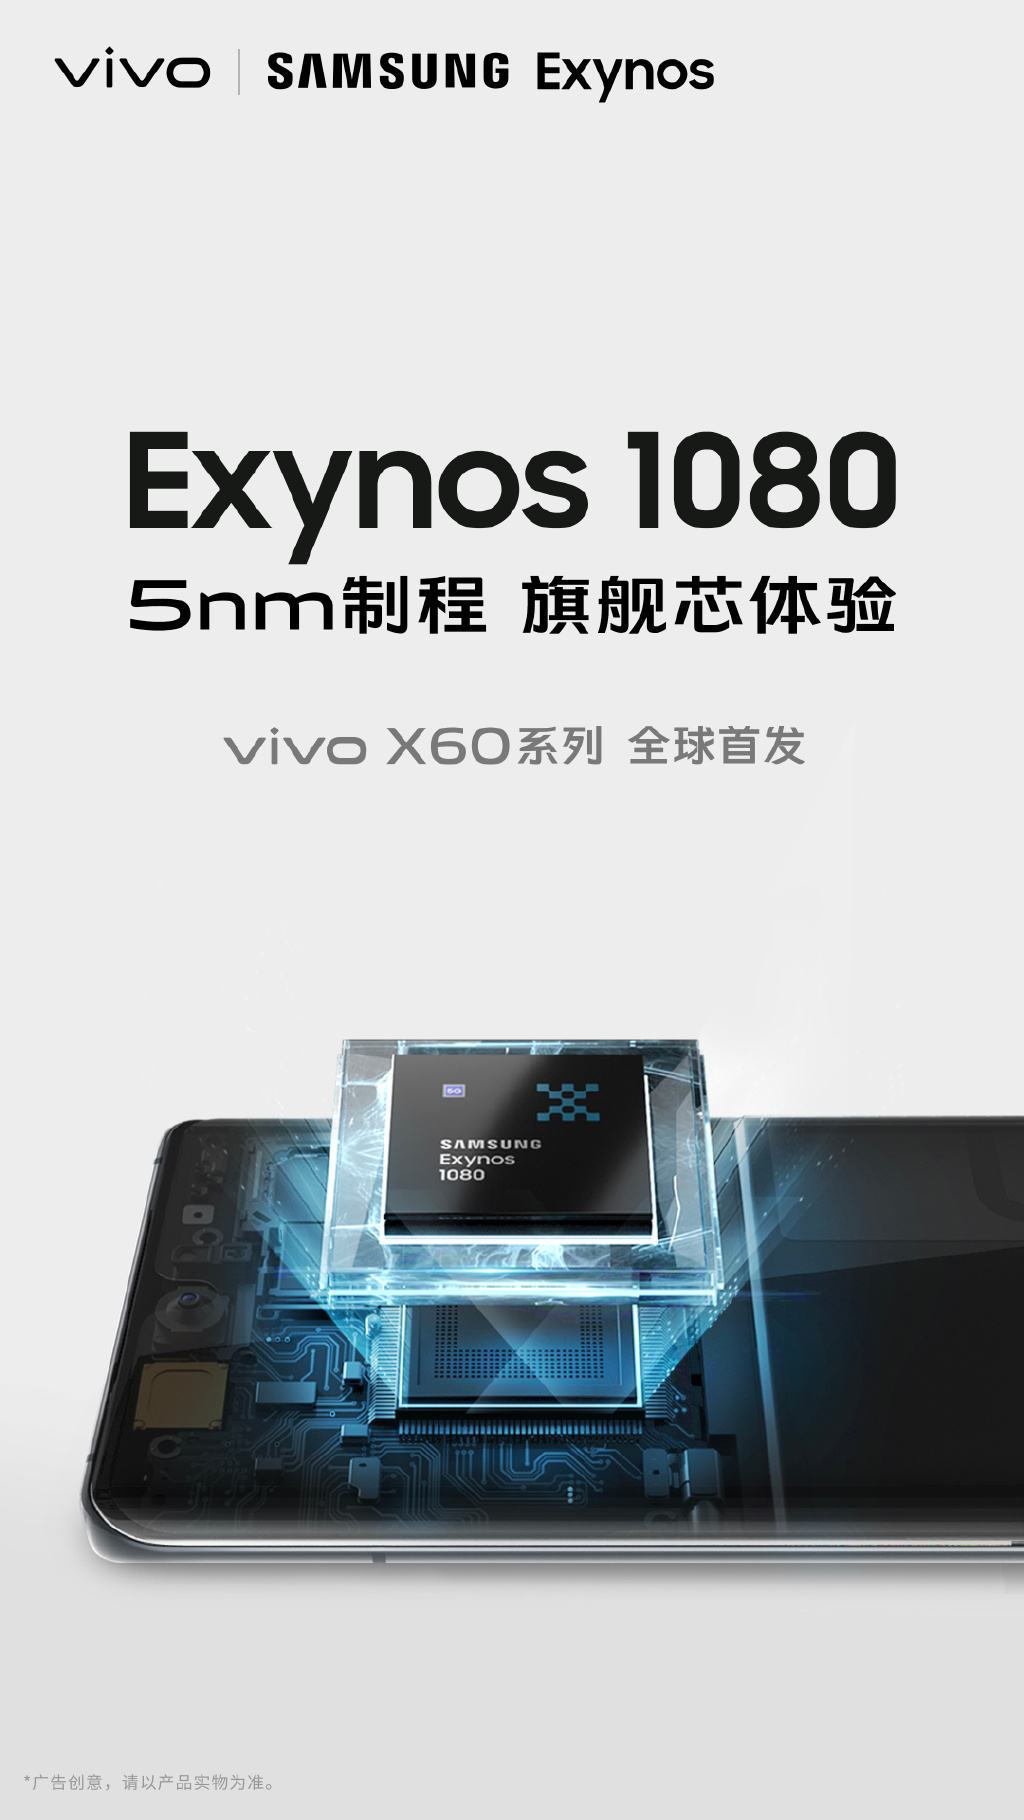 Vivo X60 Samsung Exynos 1080